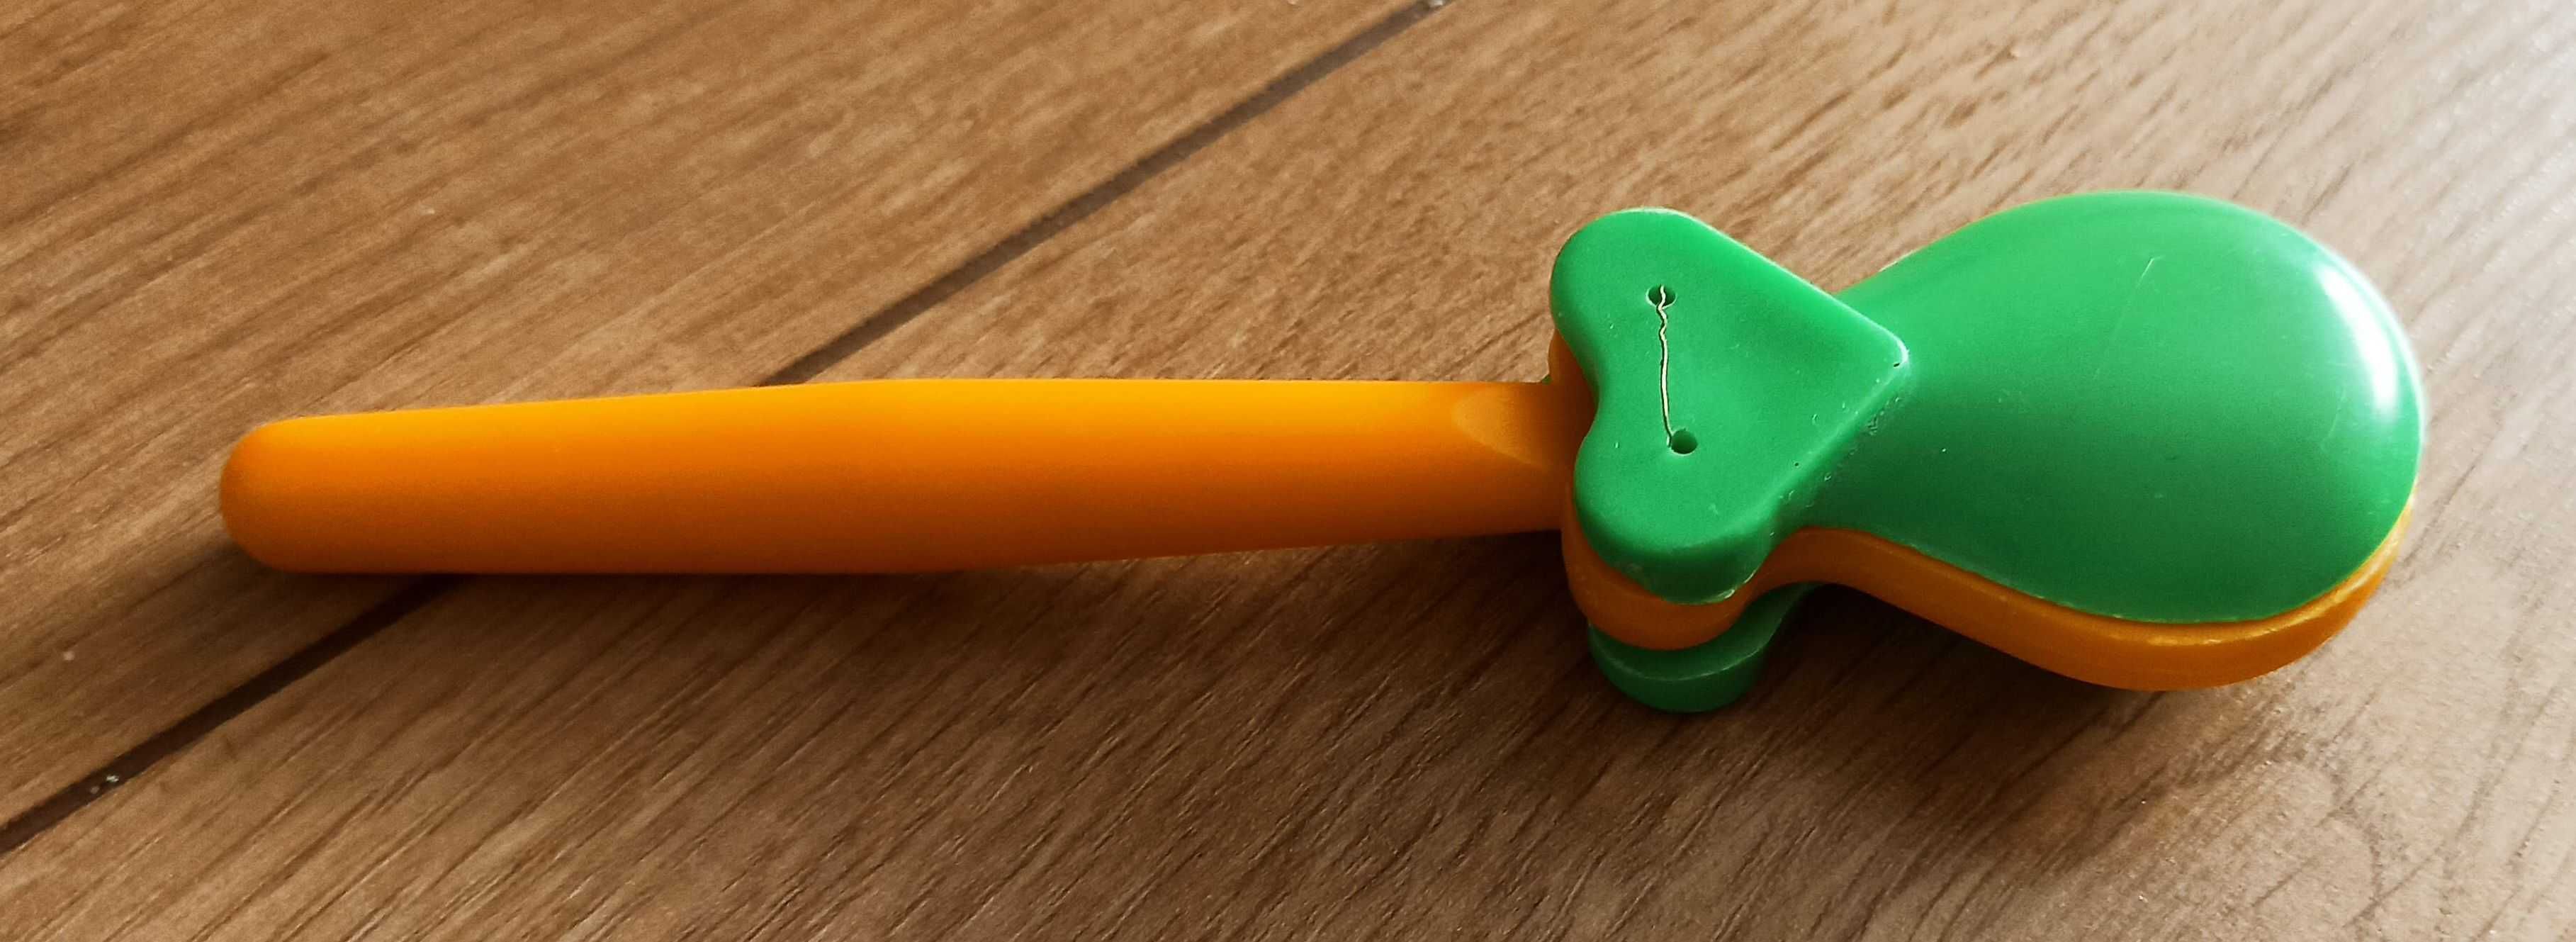 mała kołatka zabawka dla dziecka używana zielono-żółta